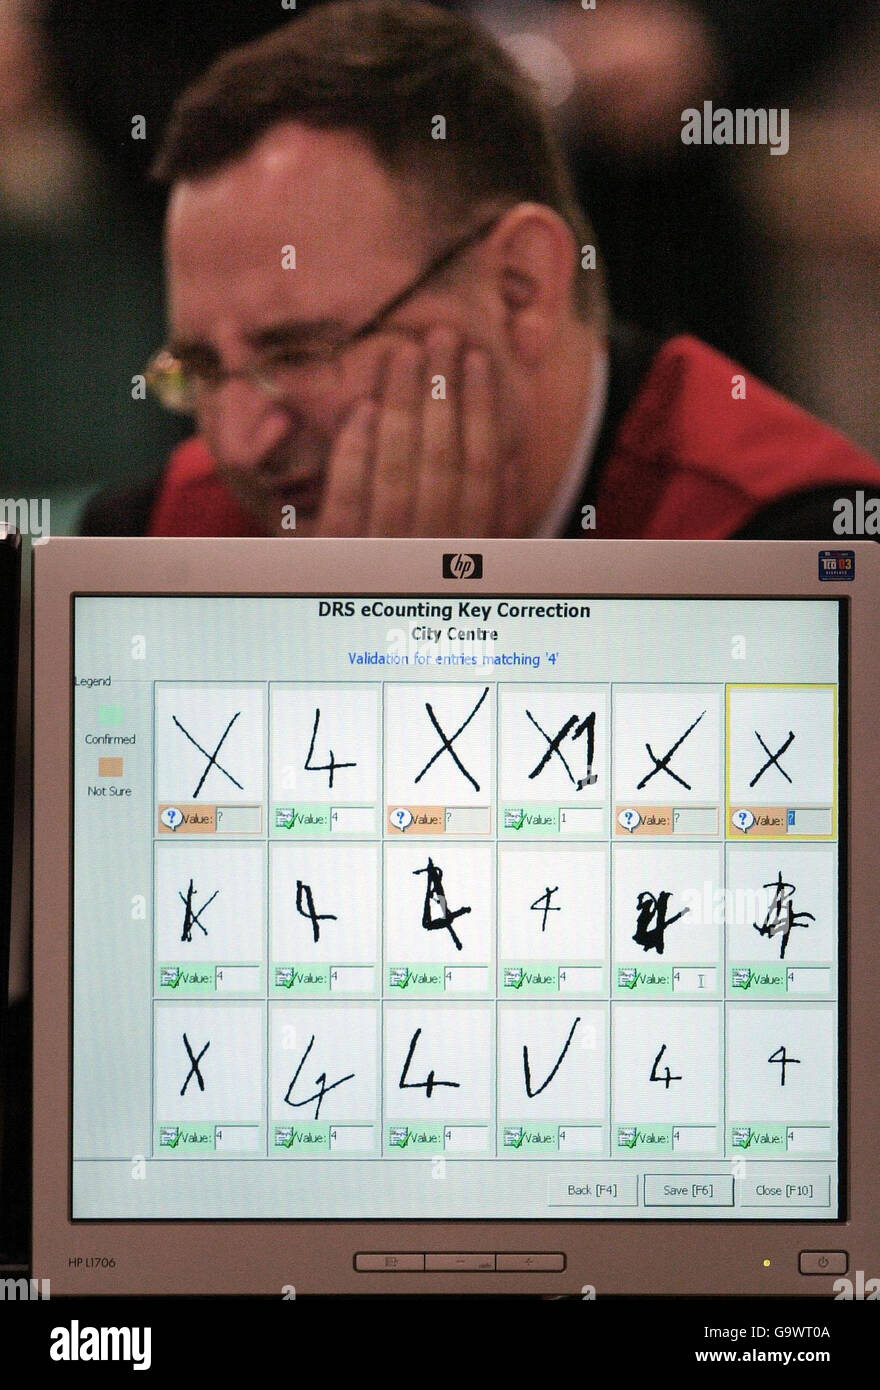 Un computer visualizza i segni fatti sulle schede di voto intorno a Edimburgo, come il conteggio del personale i voti nelle elezioni locali a Edimburgo. Foto Stock